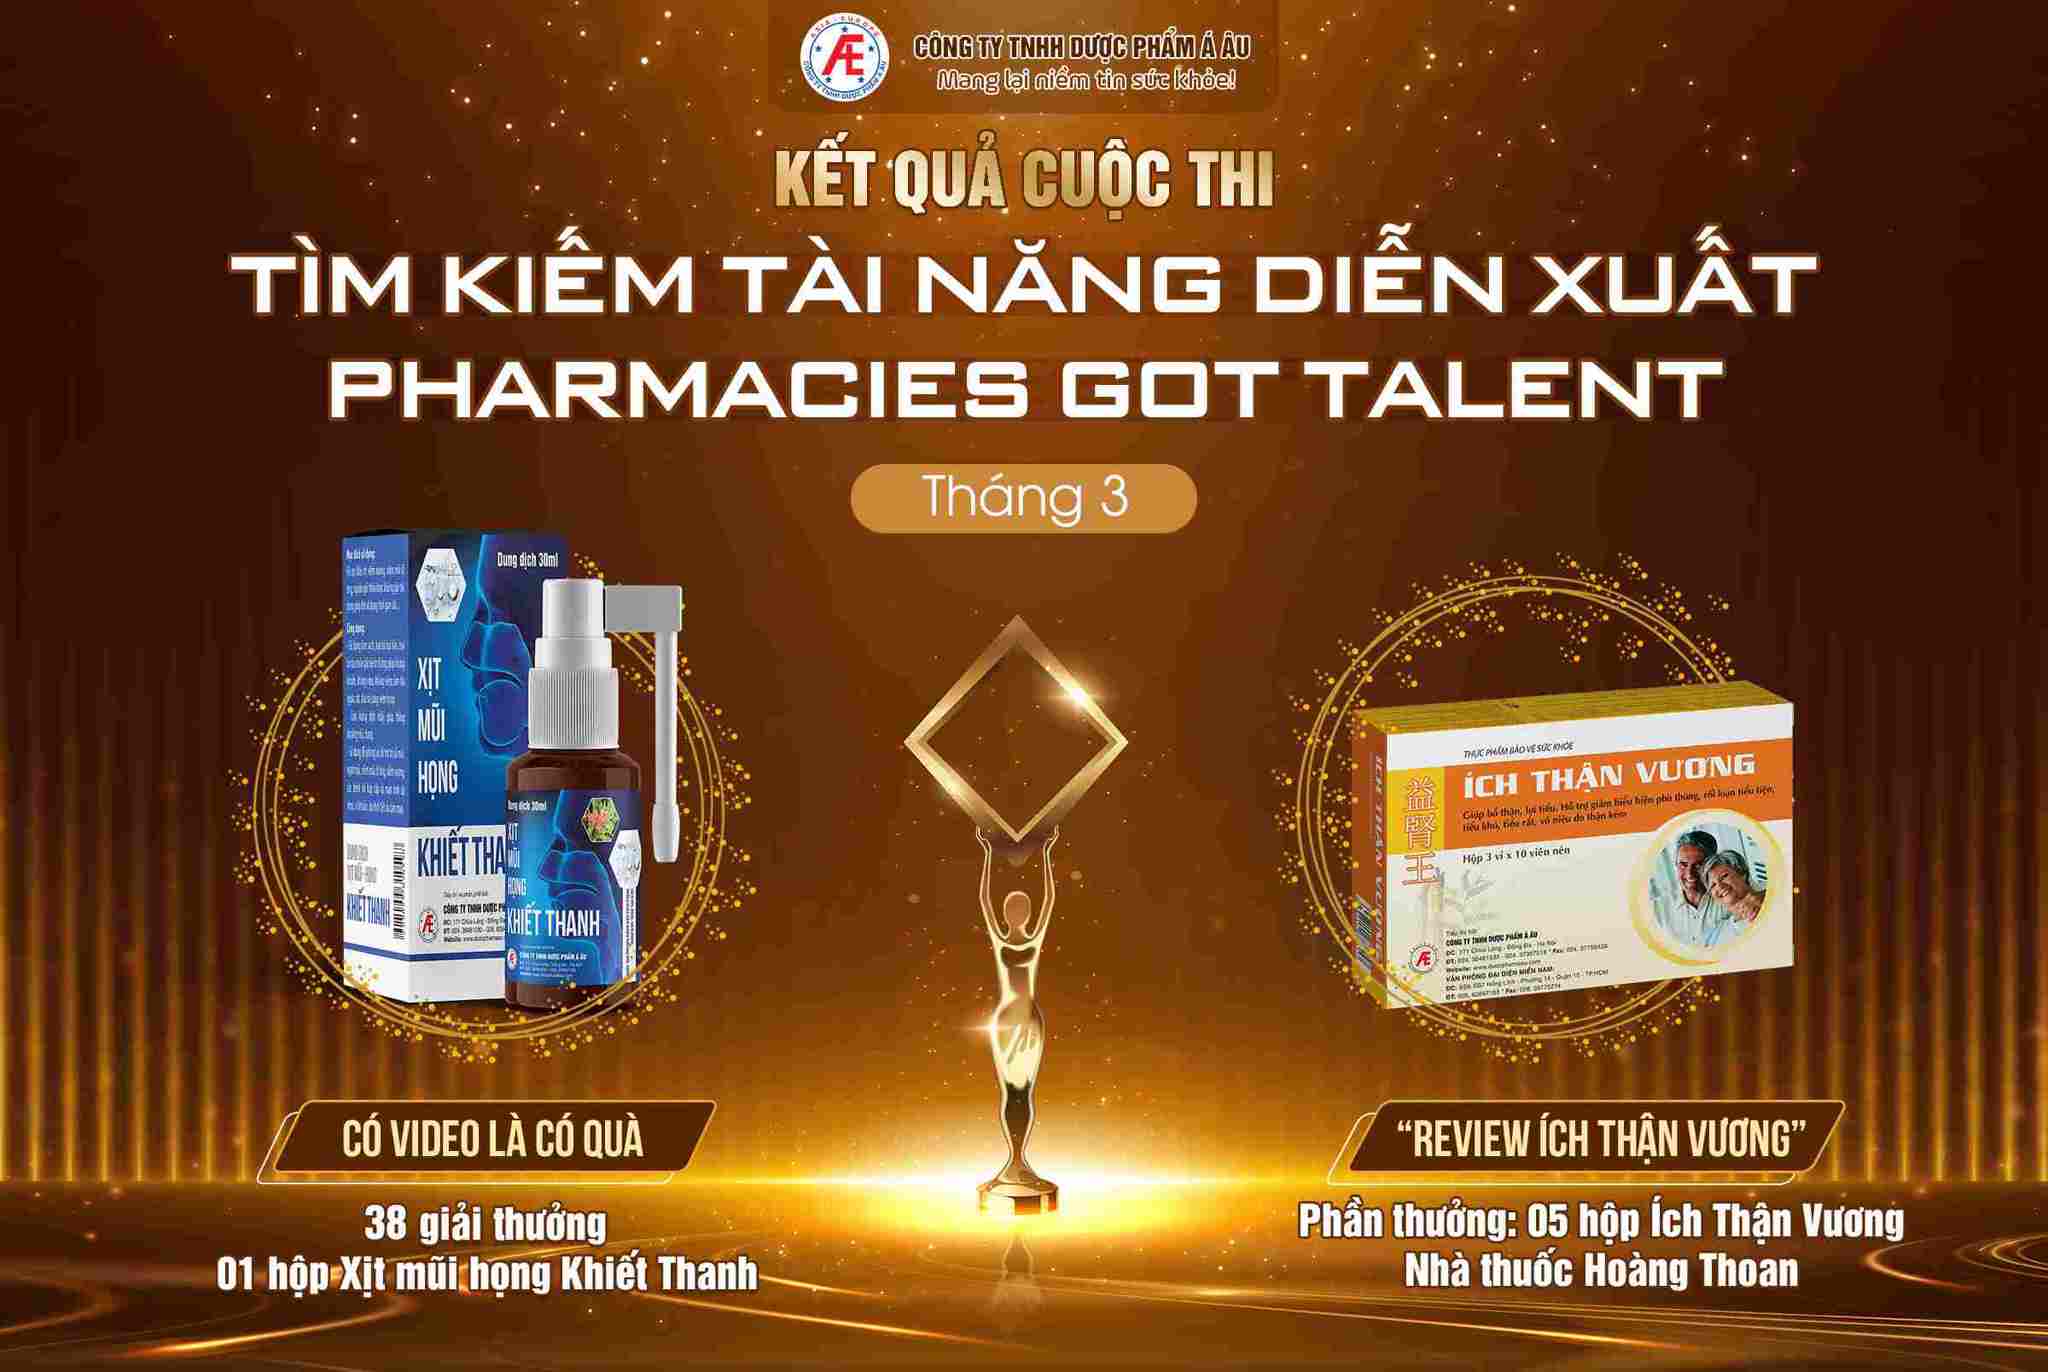 Công bố kết quả cuộc thi “Tìm kiếm tài năng diễn xuất Pharmacies Got Talent” tháng 3